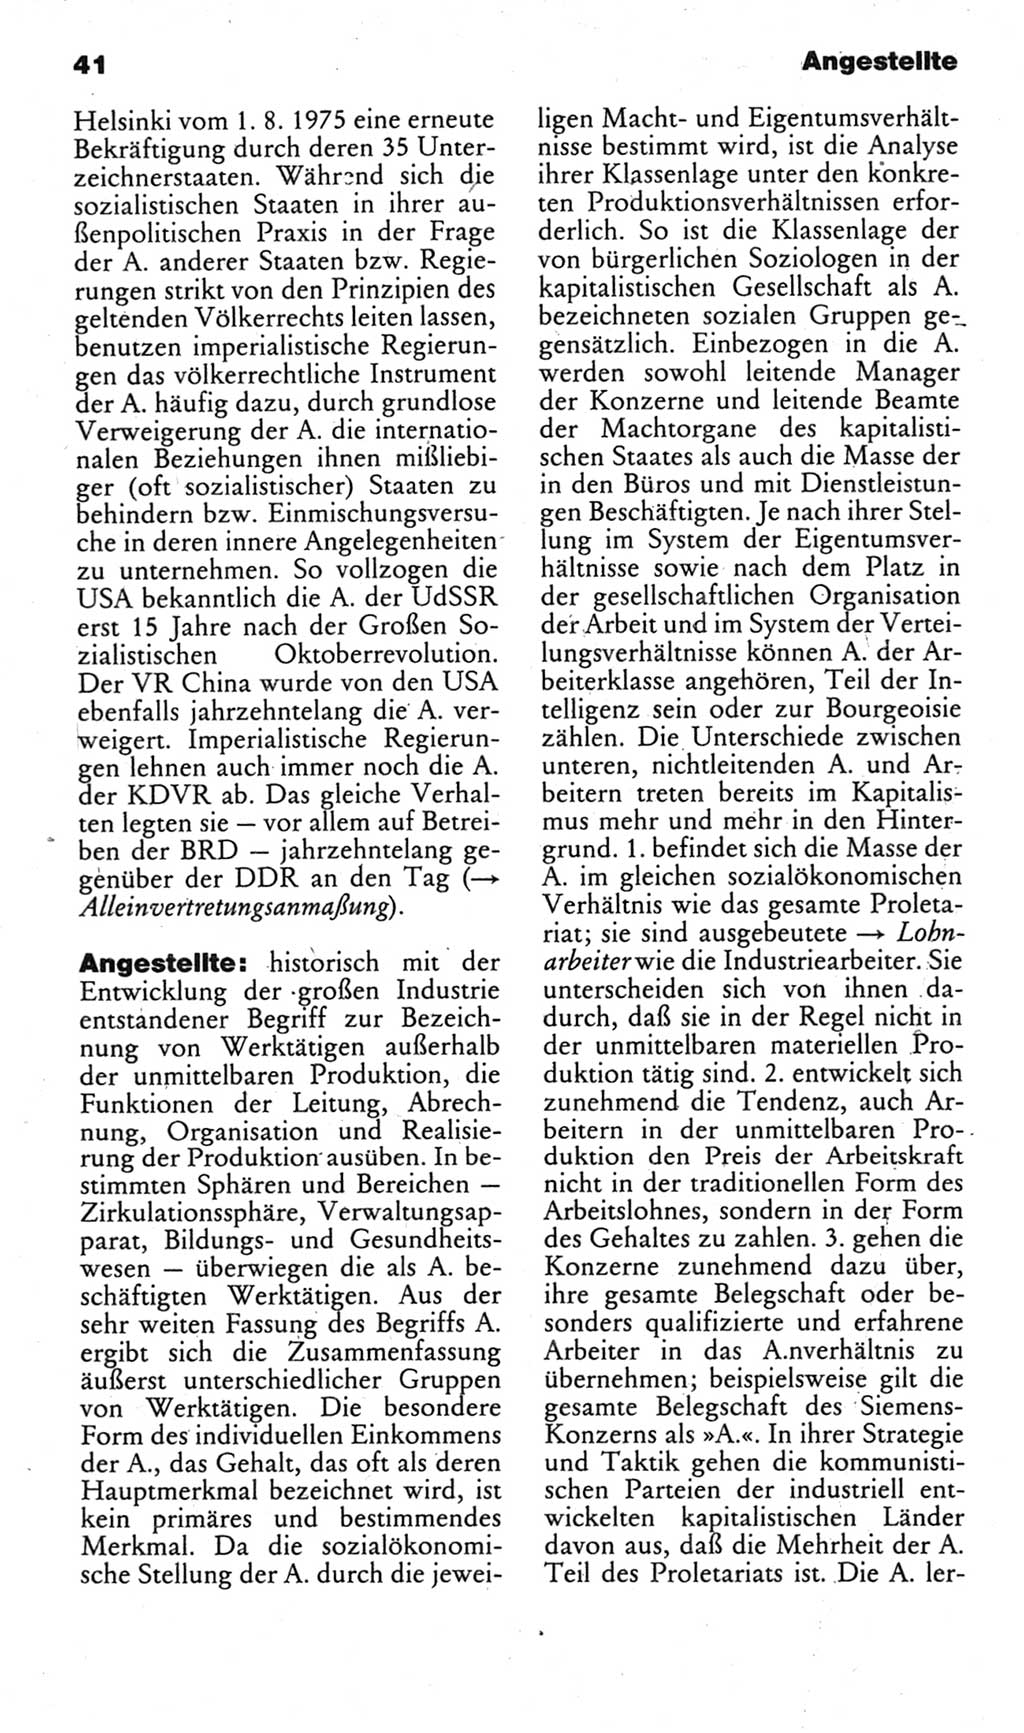 Kleines politisches Wörterbuch [Deutsche Demokratische Republik (DDR)] 1983, Seite 41 (Kl. pol. Wb. DDR 1983, S. 41)